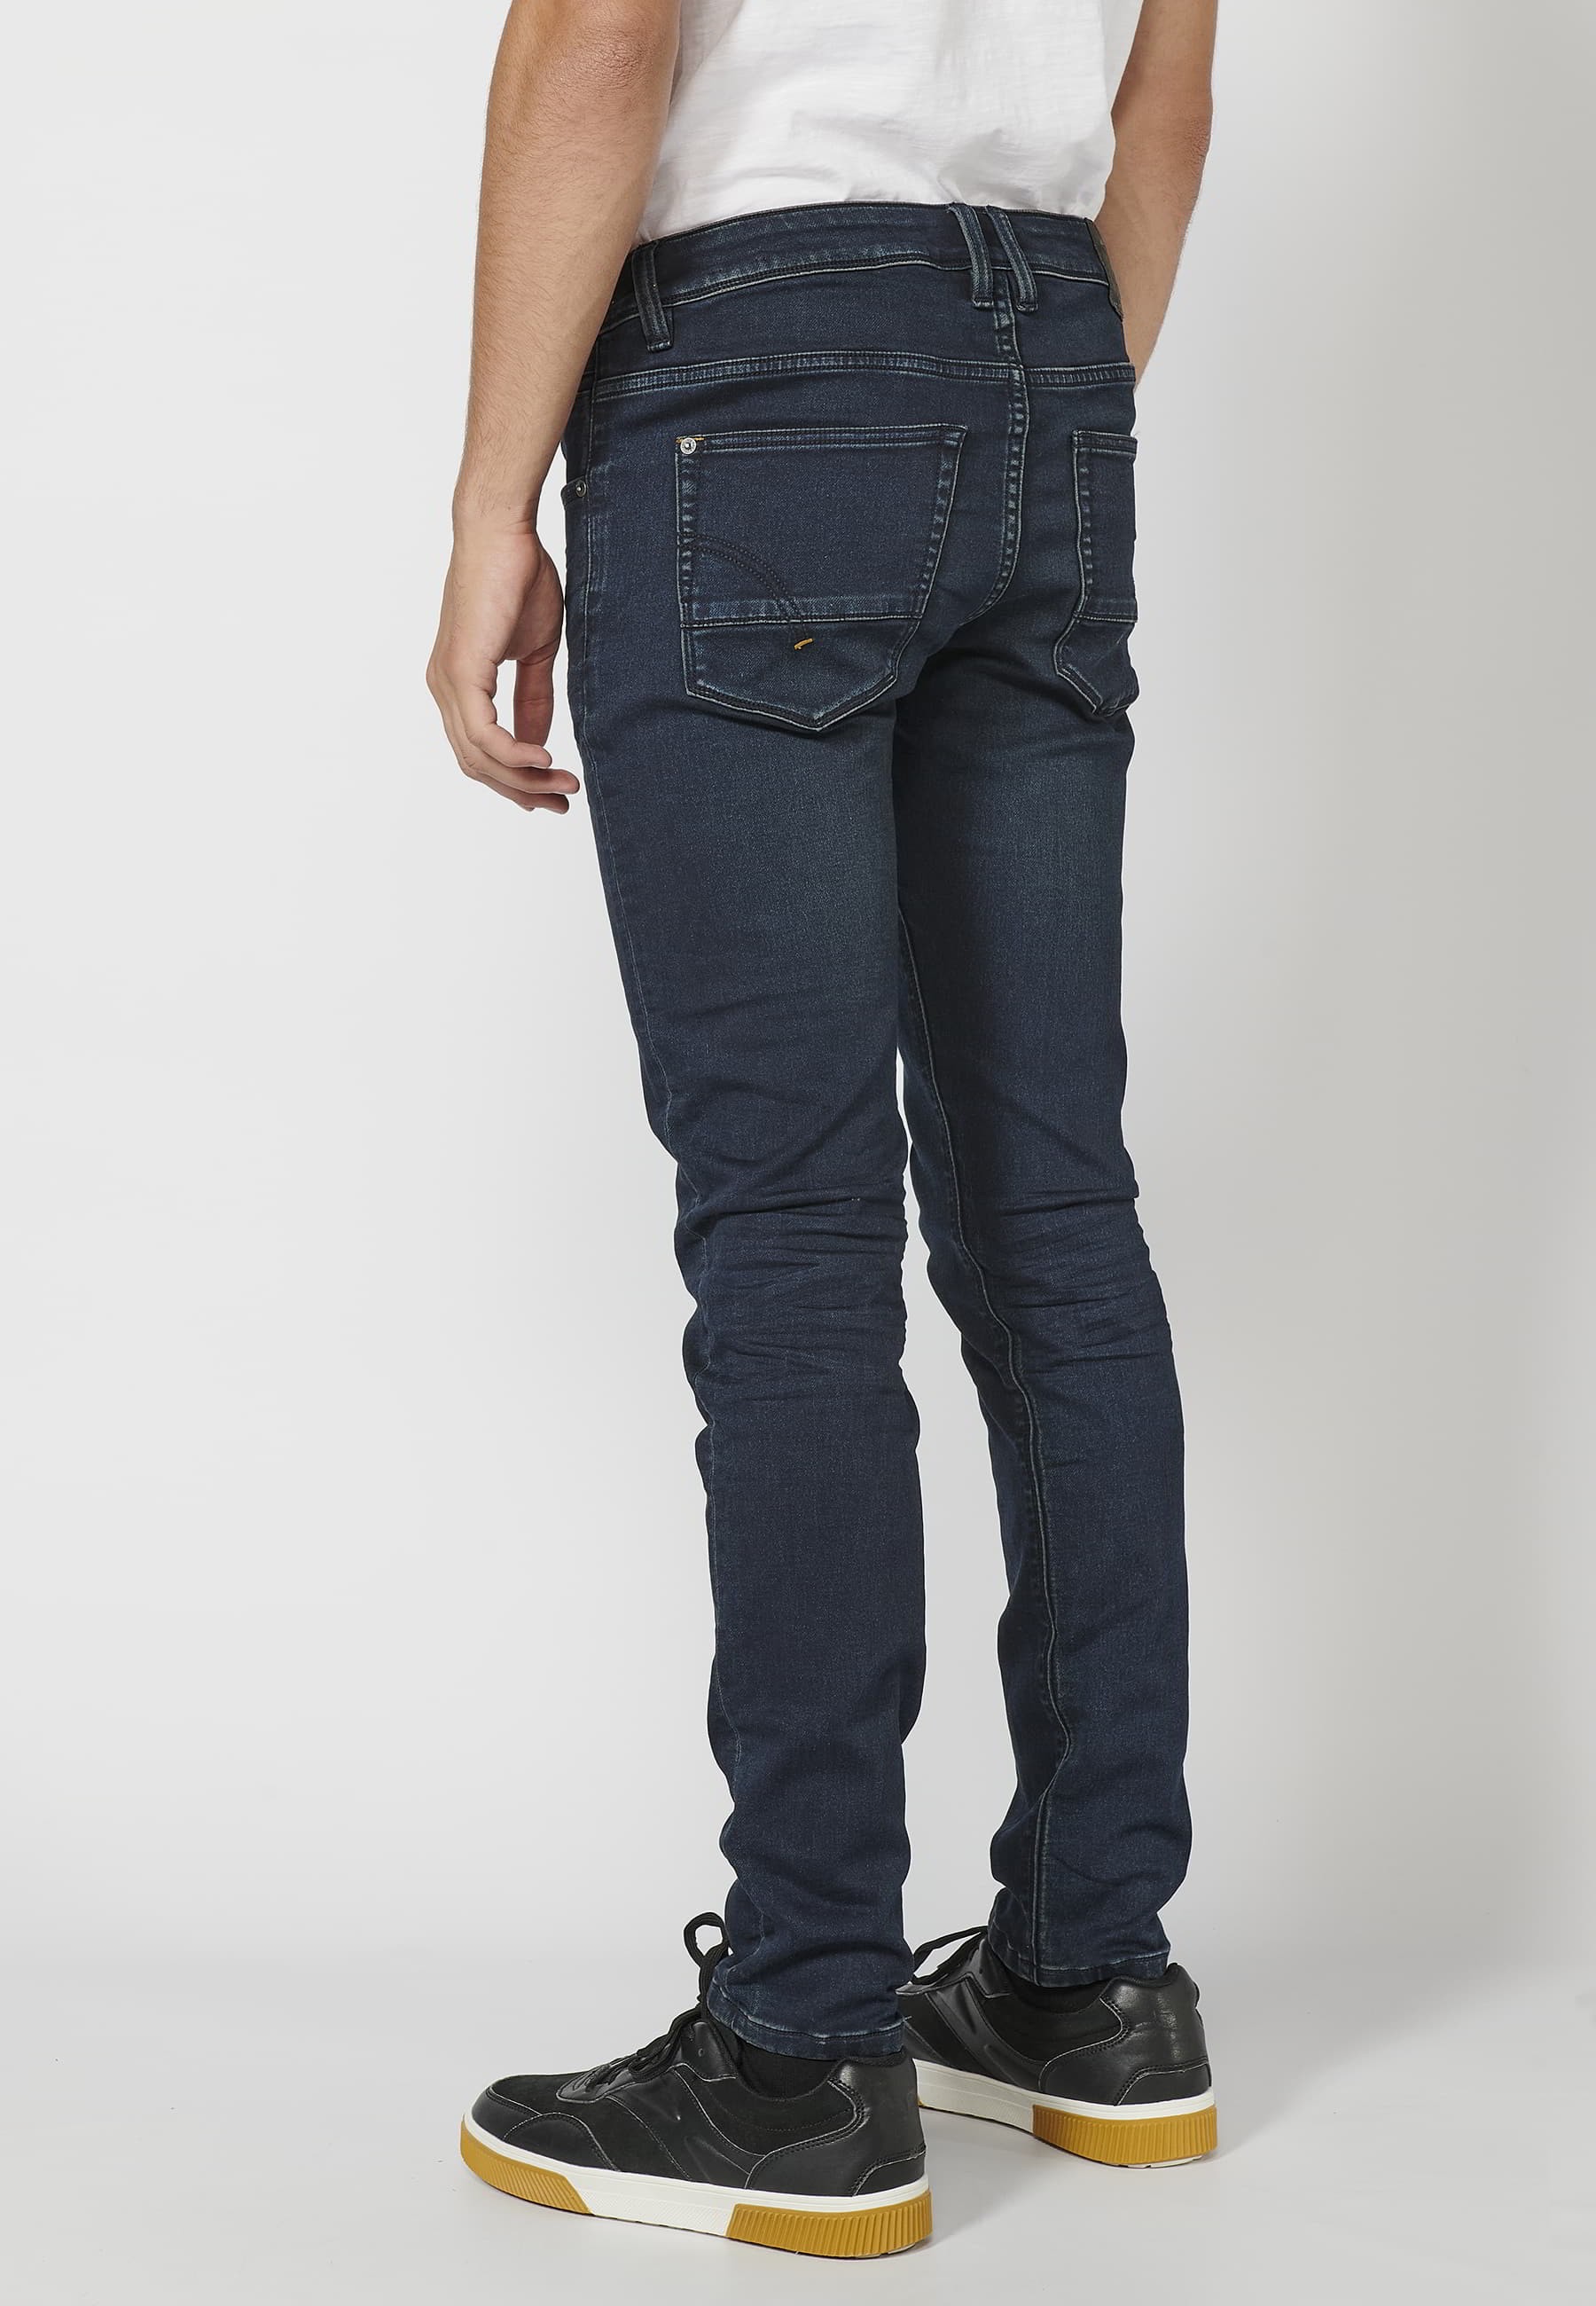 Pantalon Jean long coupe slim, couleur Bleu Foncé pour Homme 5